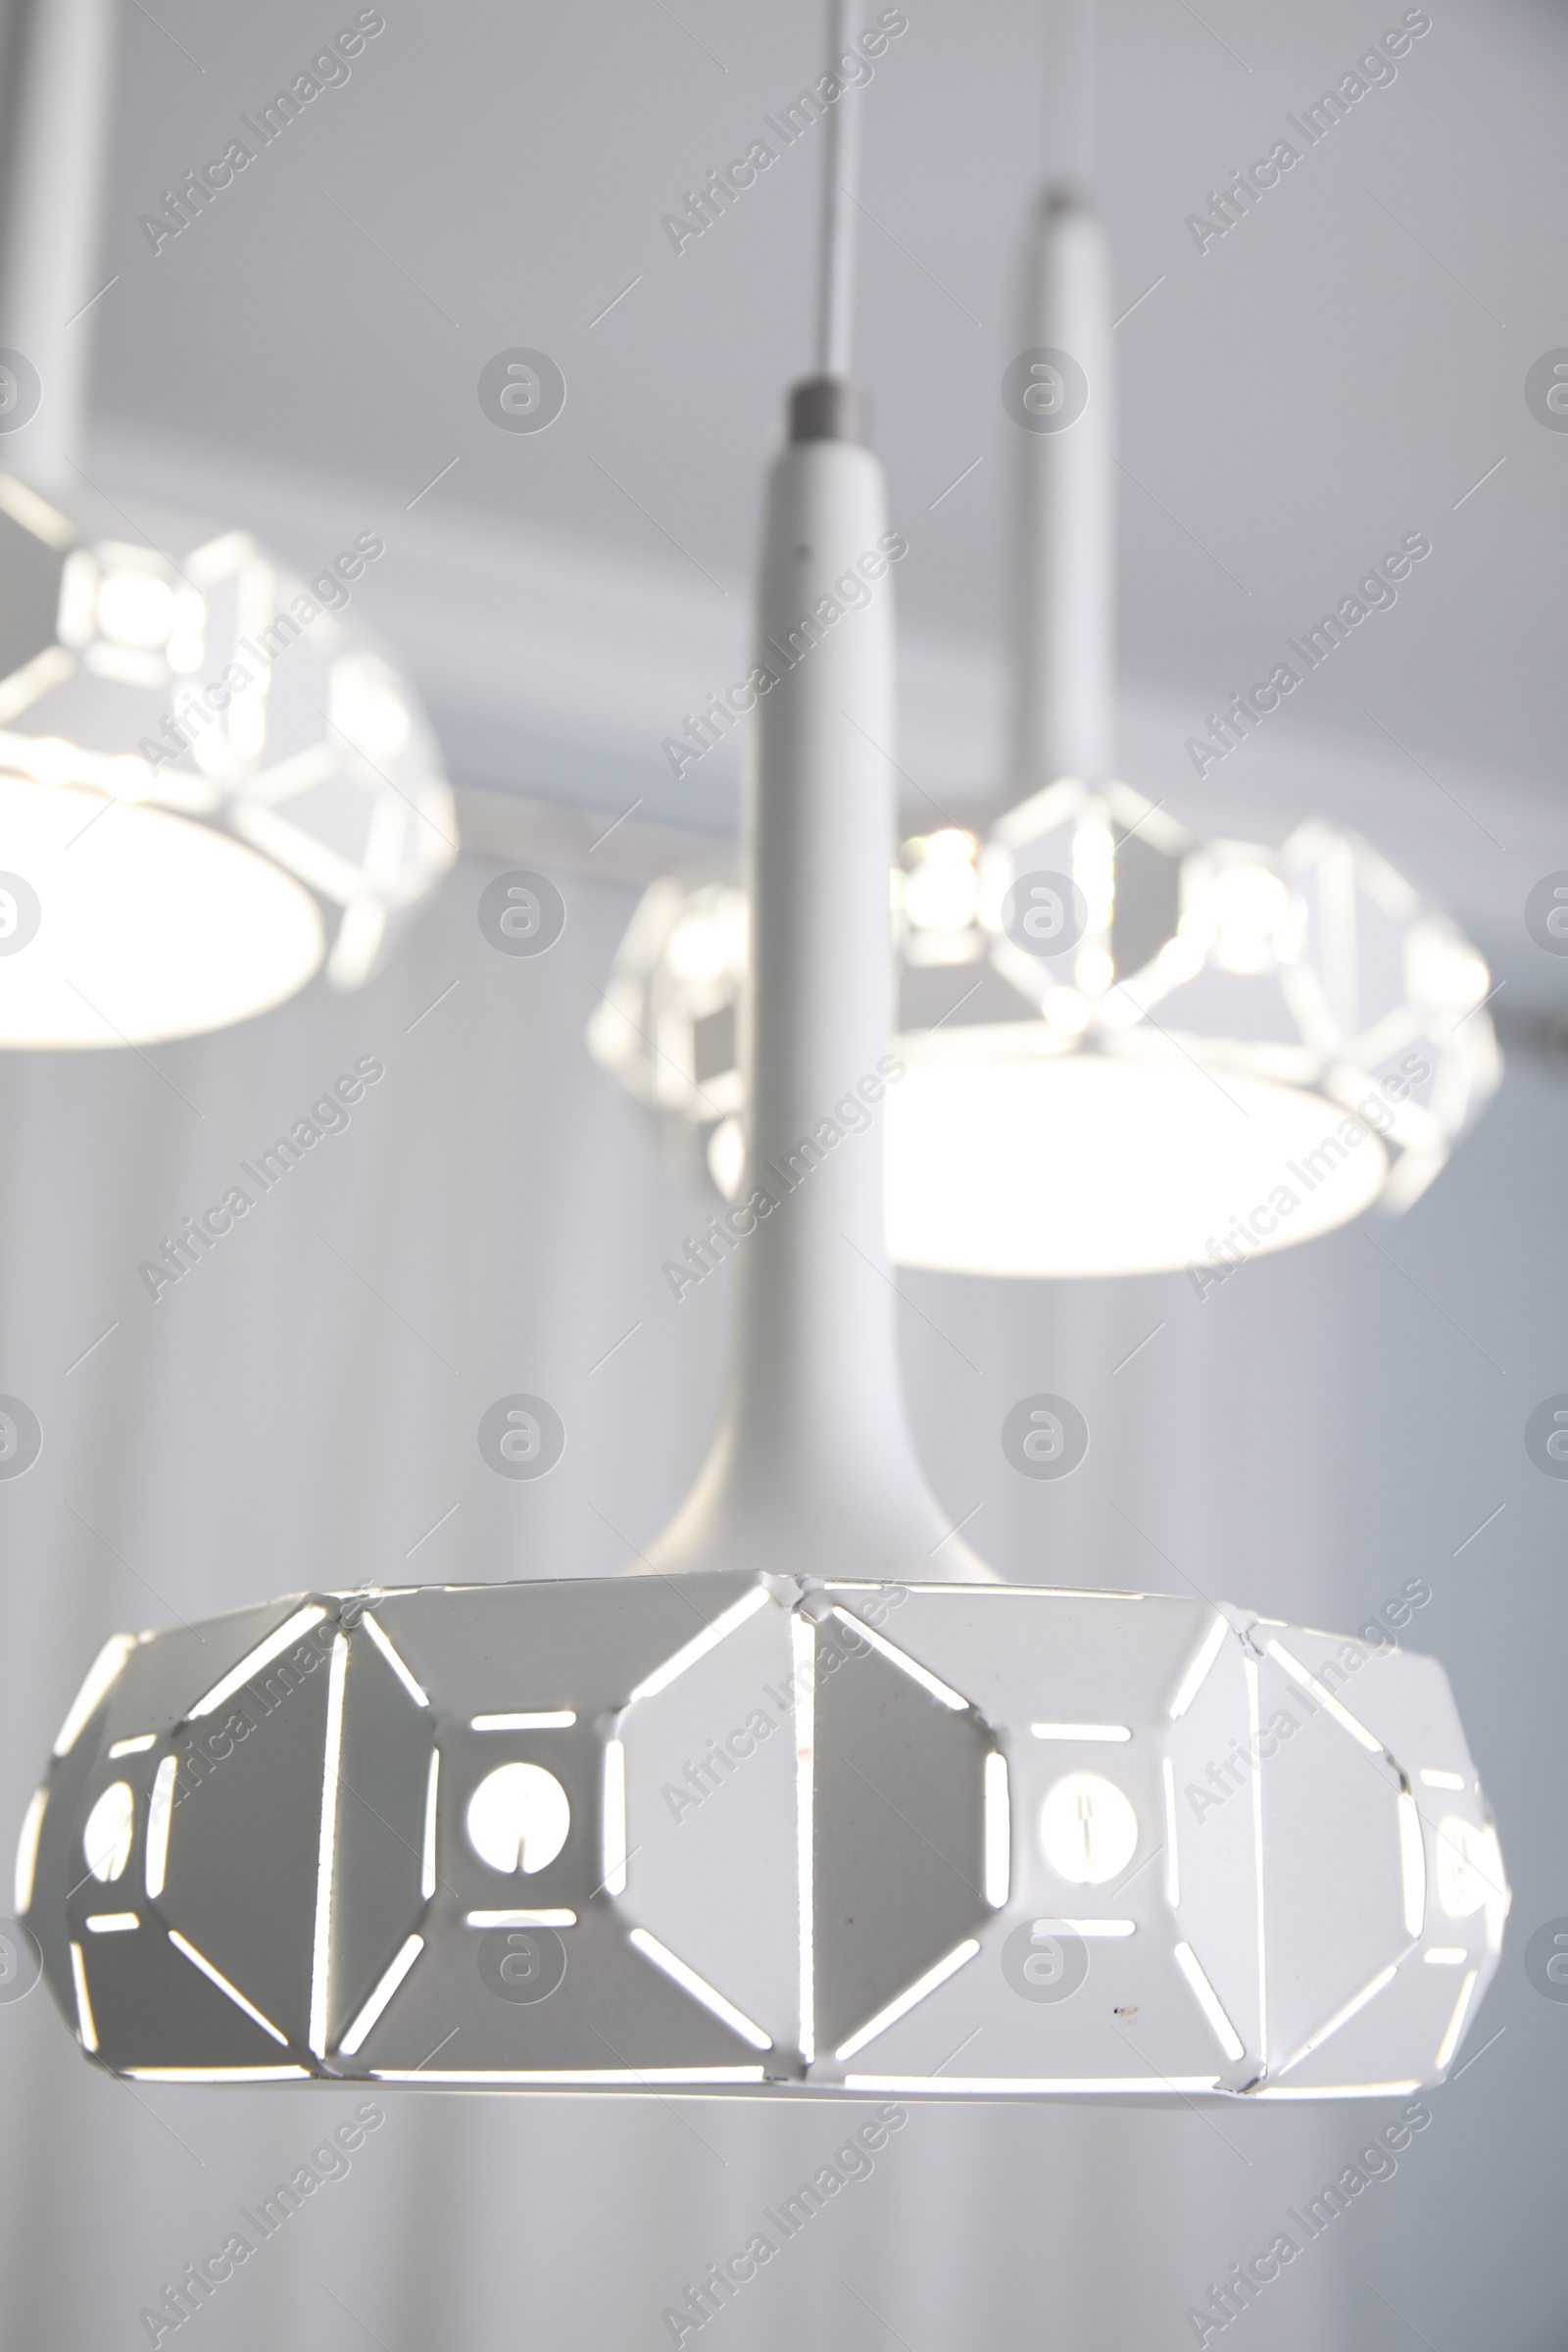 Photo of Stylish pendant lamp on white ceiling indoors